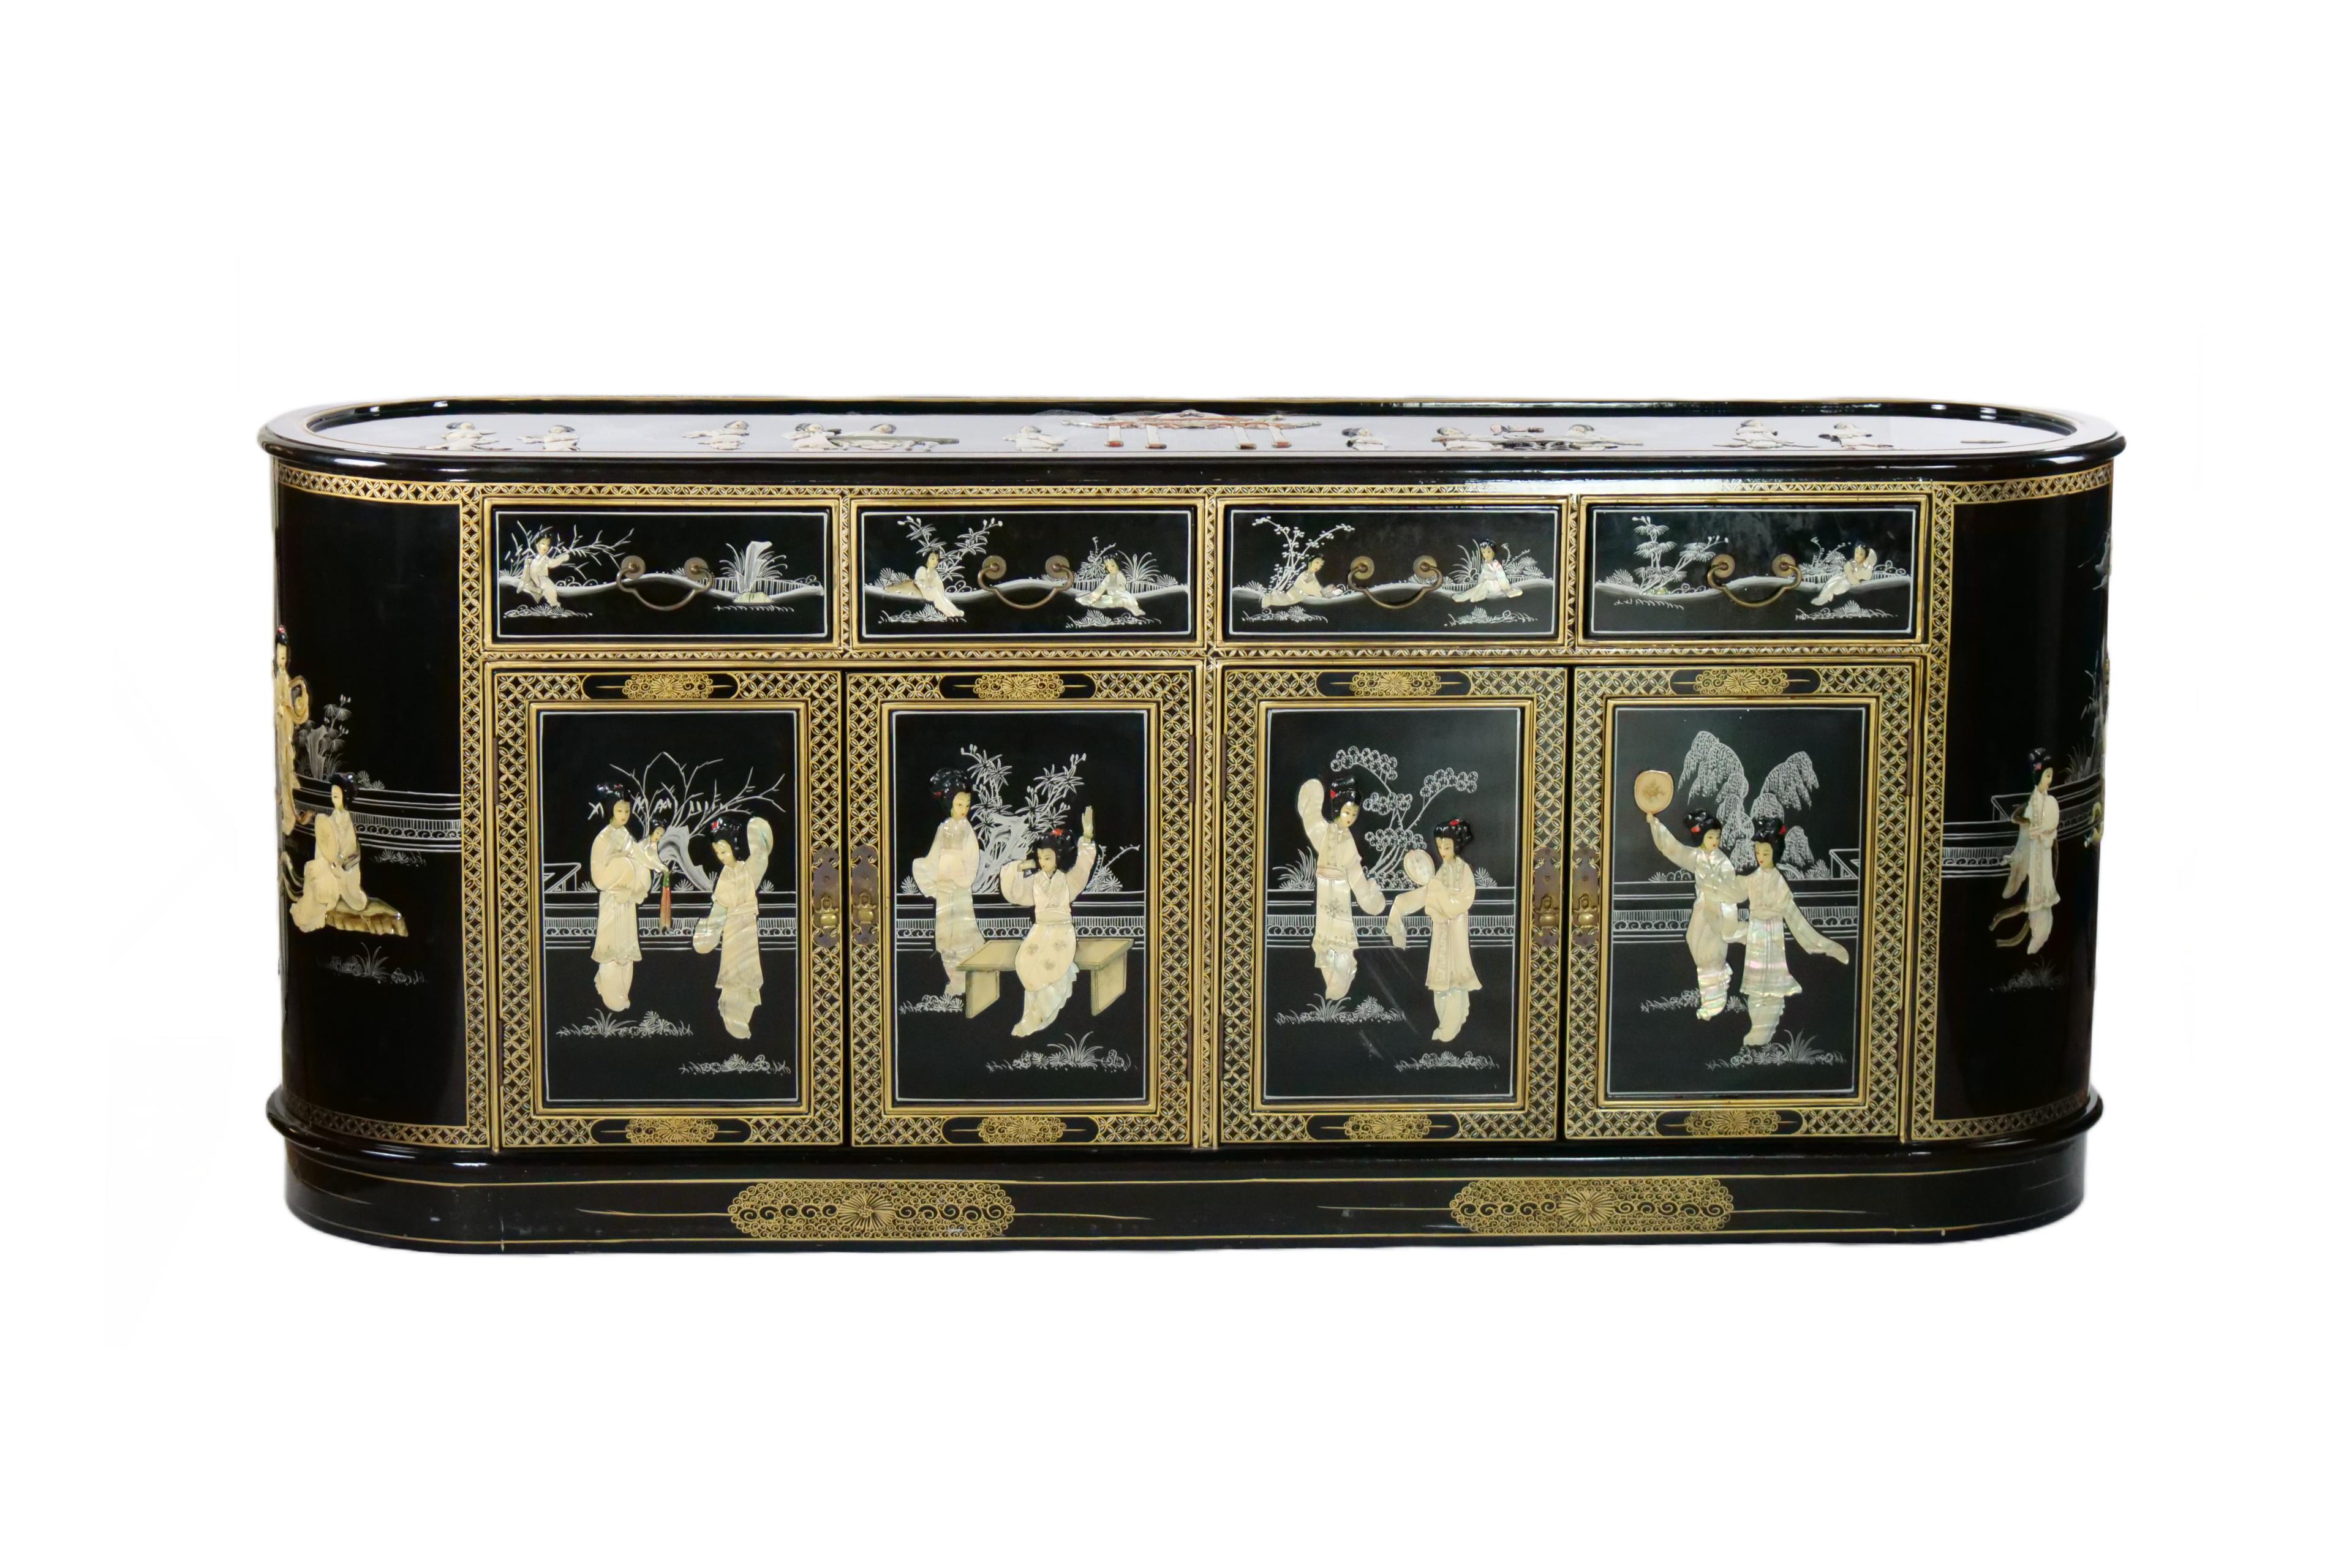 
Magnifique buffet / crédence en bois laqué noir peint à la main et décoré de scènes chinoises. Le buffet comporte quatre tiroirs supérieurs à tirettes reposant sur quatre doubles portes inférieures. Chaque tiroir est doublé d'un tissu en velours